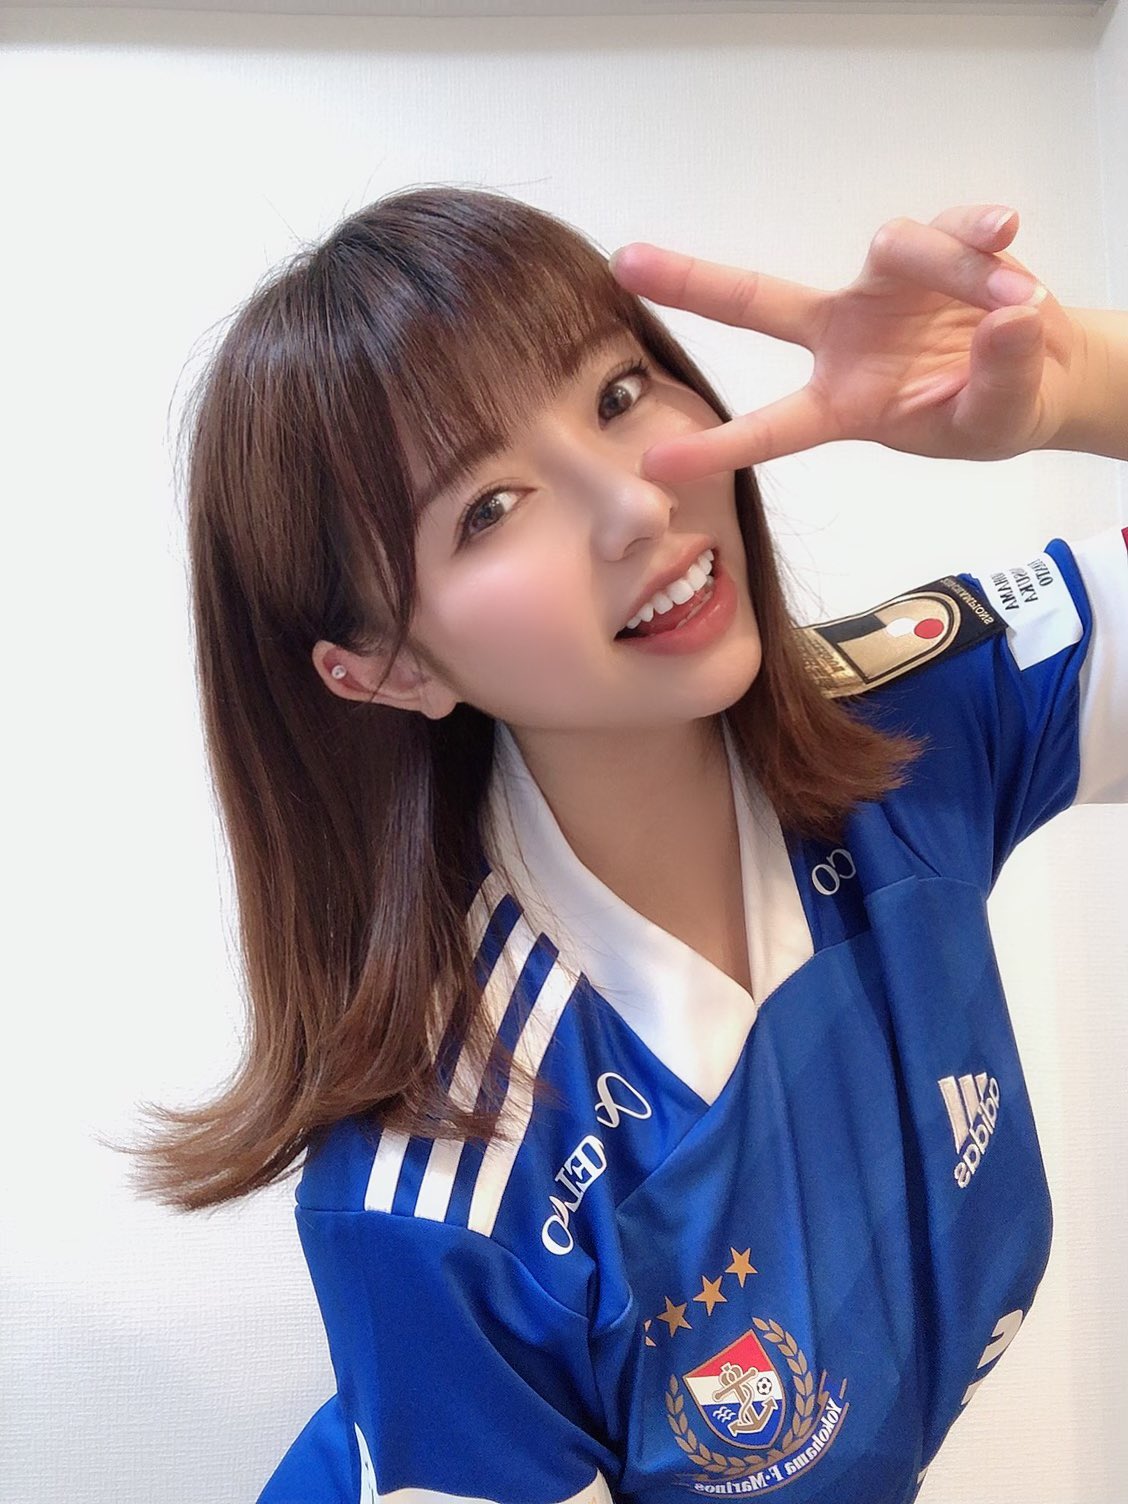 Mariya Tachibana กราเวียร์ไอดอลสุดฮอต แฟนบอลพันธุ์แท้ดาวเตะทีมชาติไทย